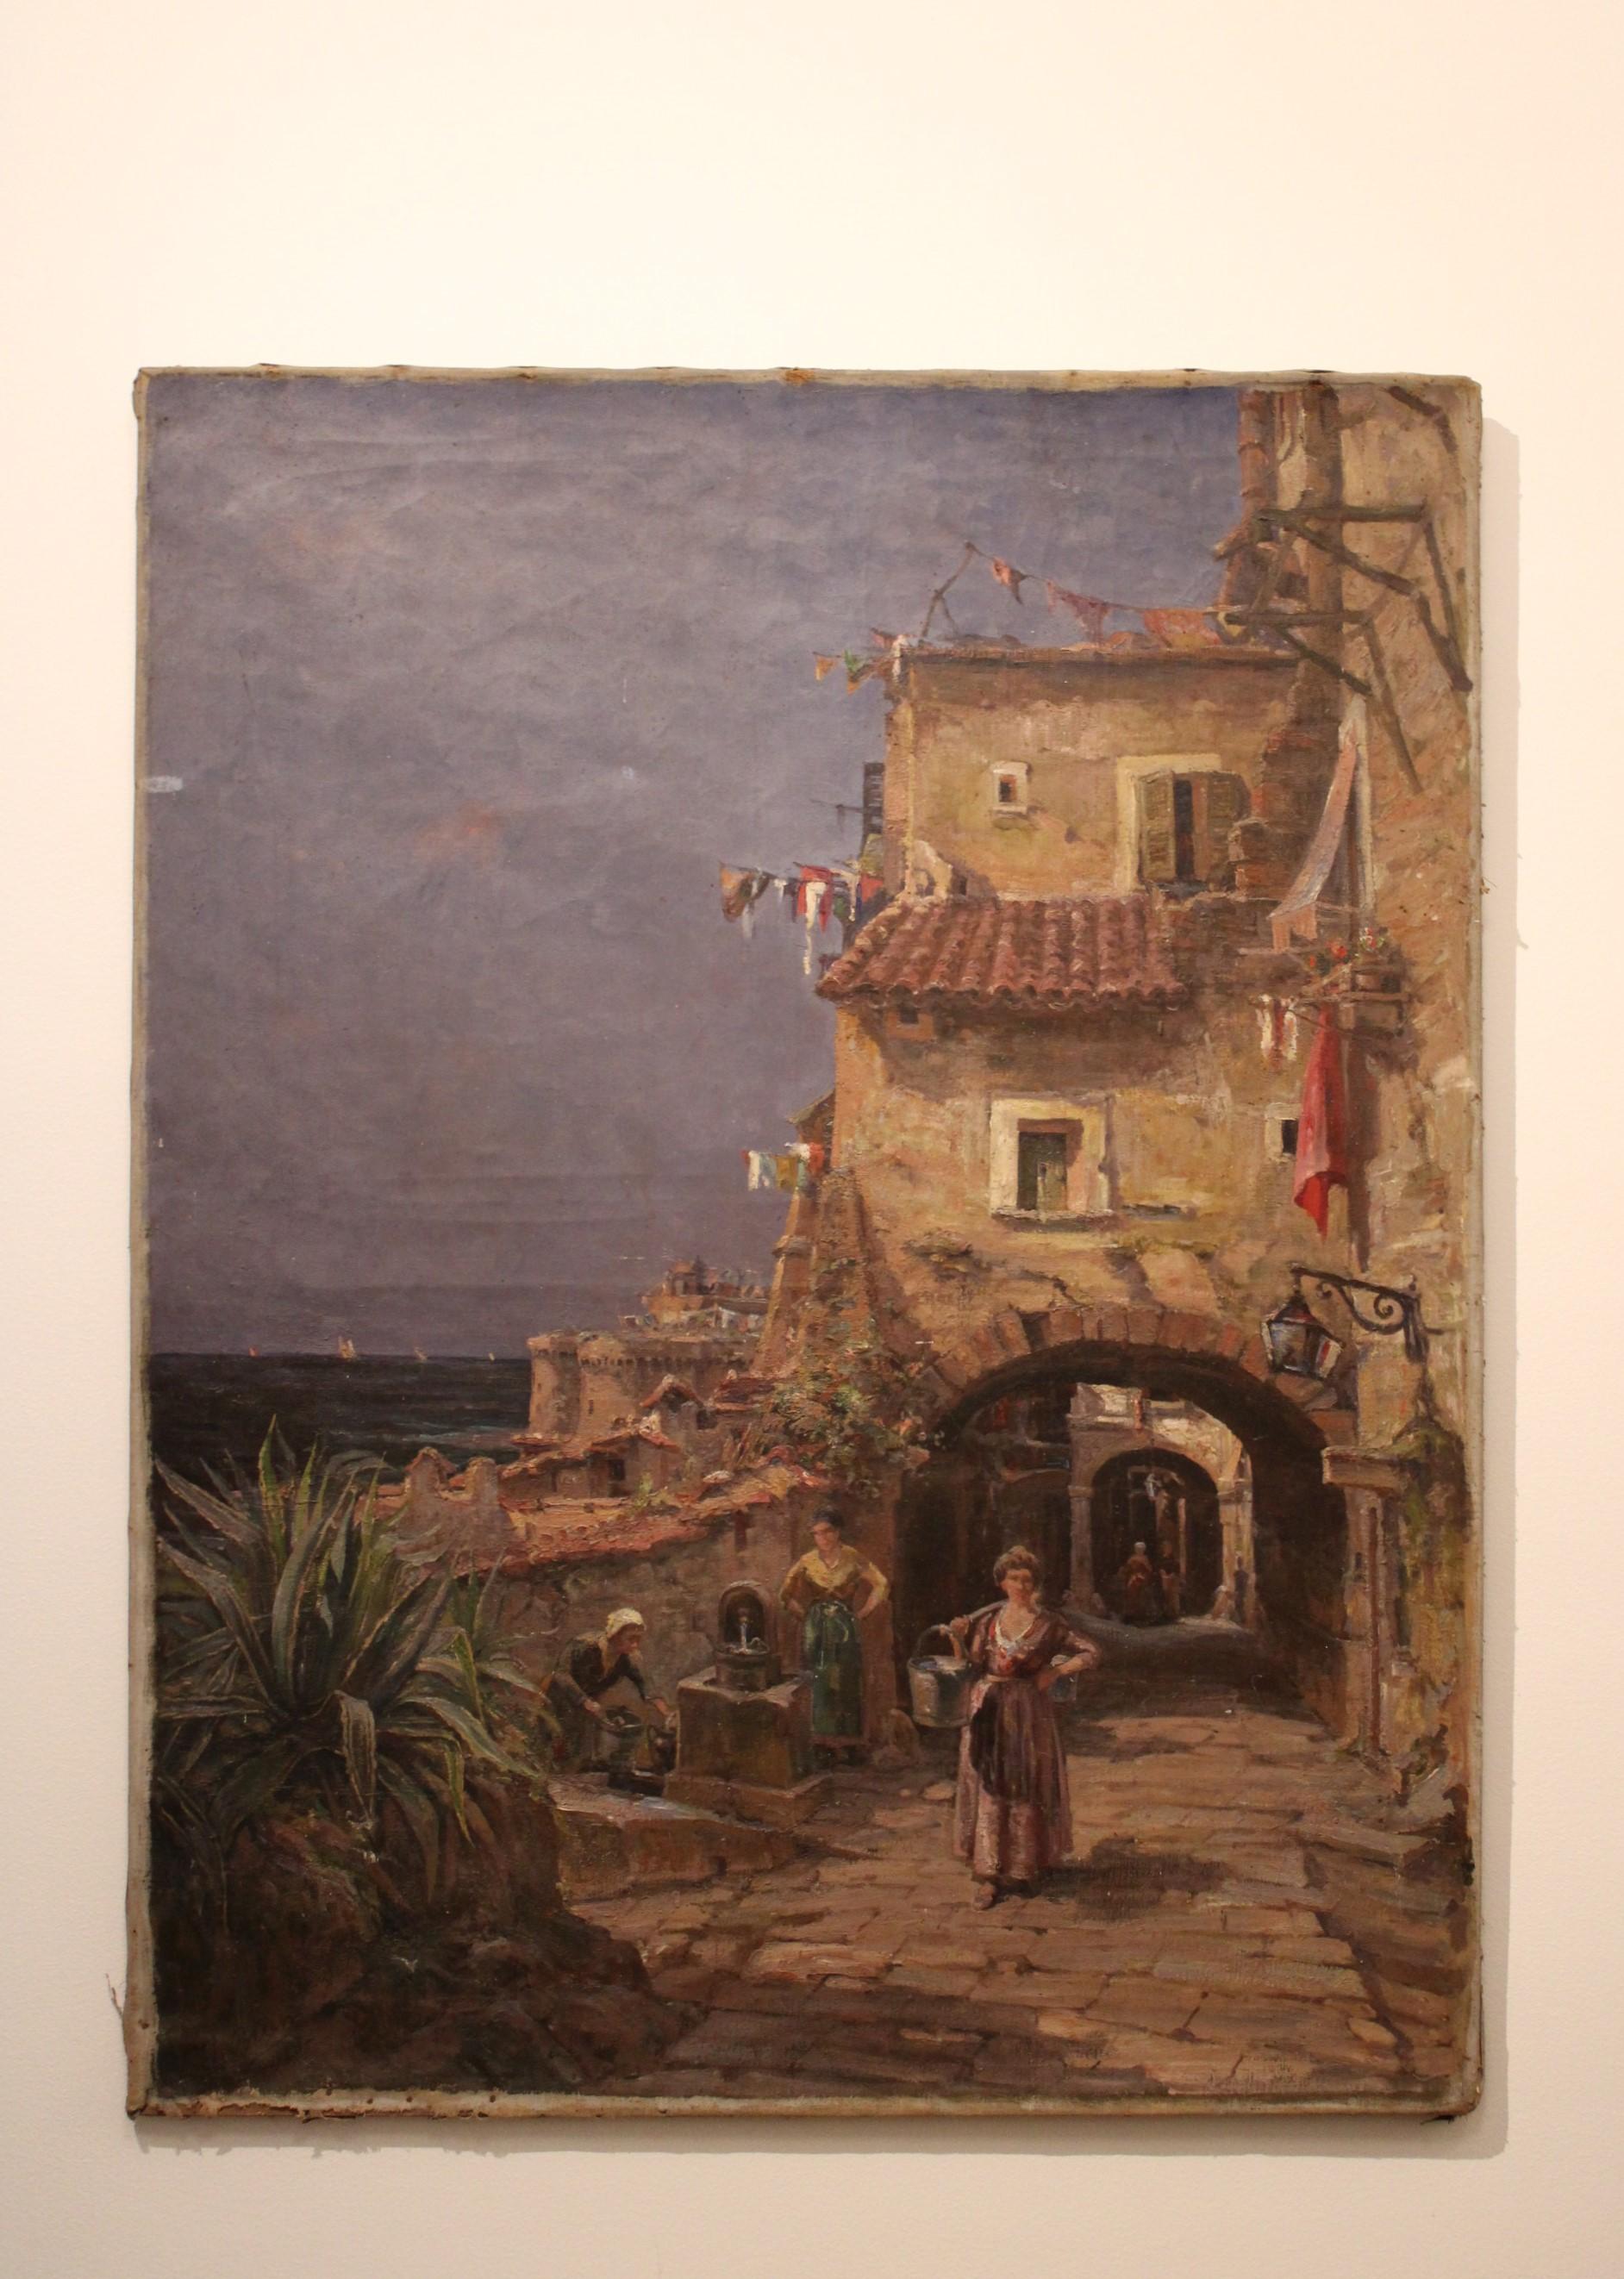 Gemälde des französischen Malers Jules Félix Brien (1871-1945)
Öl auf Leinwand 
Dorf in Südfrankreich
Signiert J.Brien und datiert 1920

Einige Schäden (siehe Fotos Details)